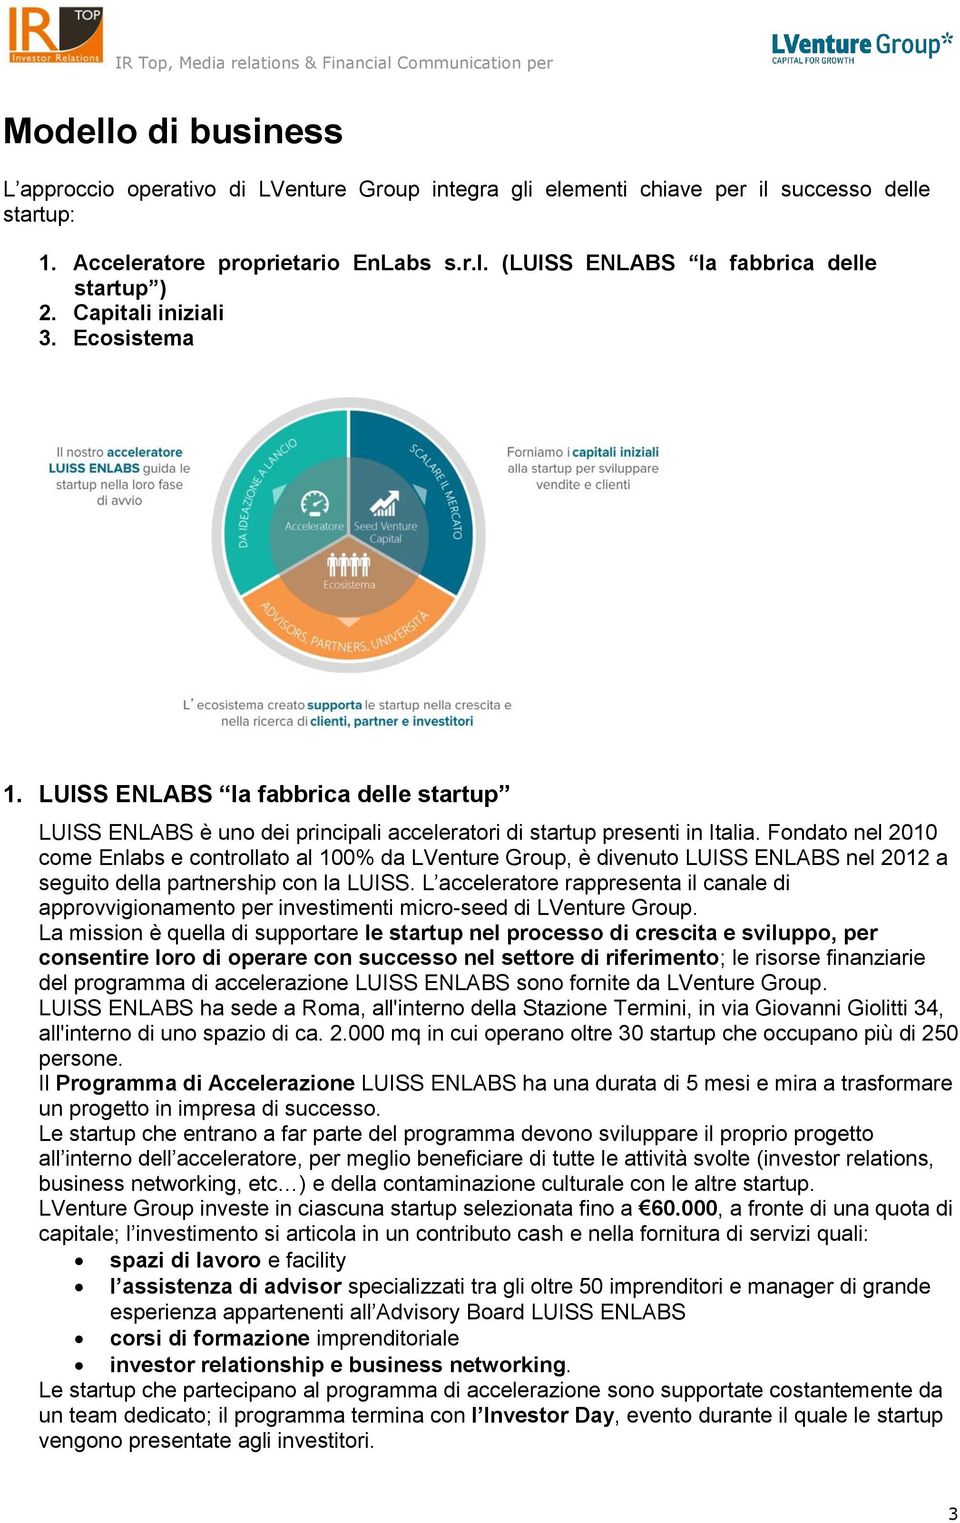 Fondato nel 2010 come Enlabs e controllato al 100% da LVenture Group, è divenuto LUISS ENLABS nel 2012 a seguito della partnership con la LUISS.